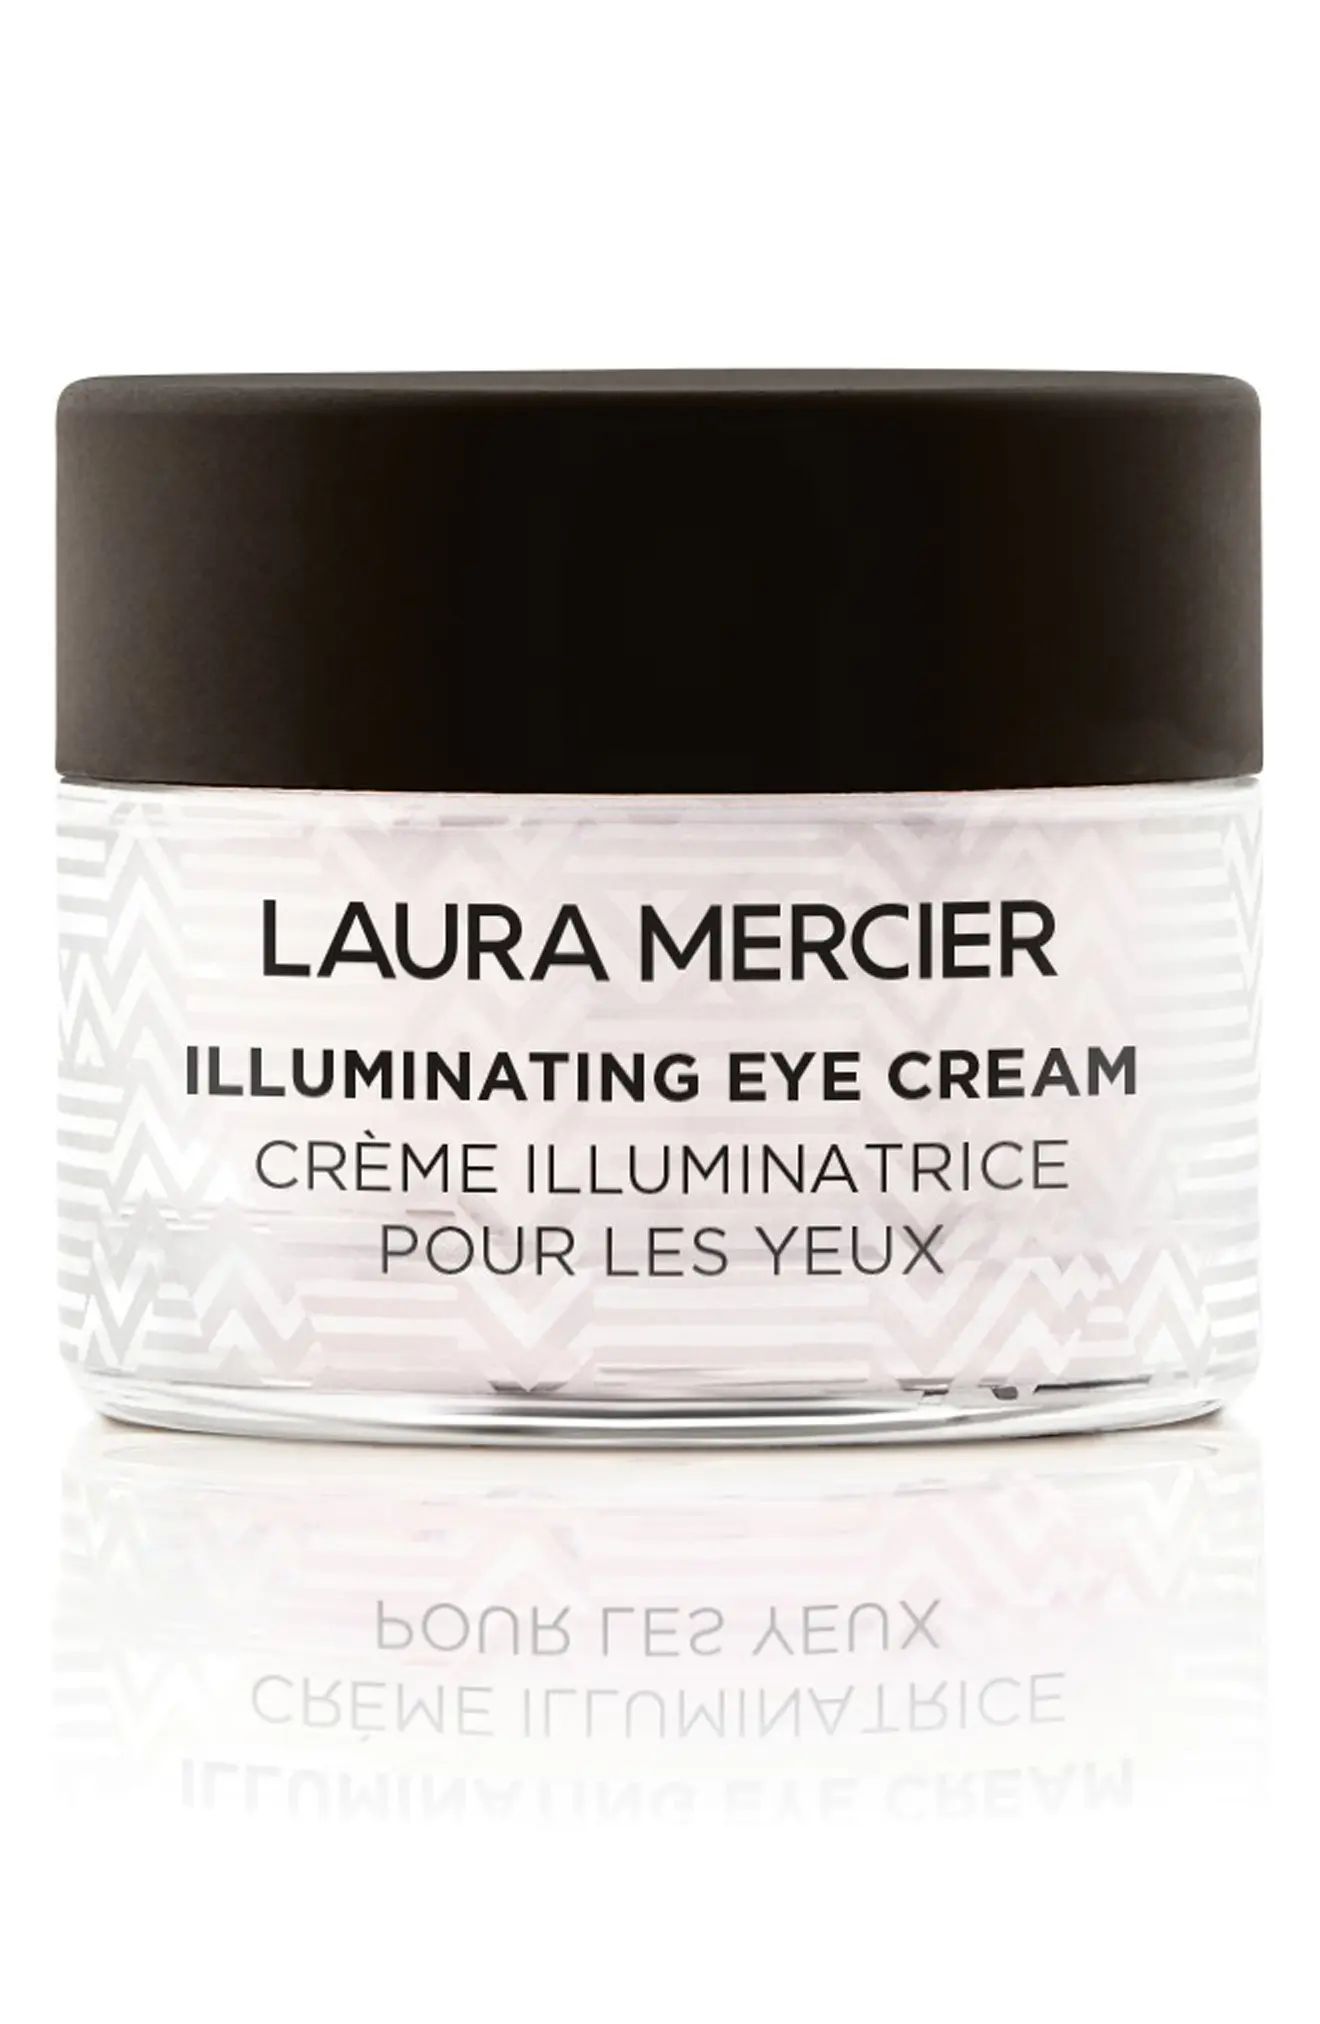 Laura Mercier Eye Cream at Nordstrom | Nordstrom